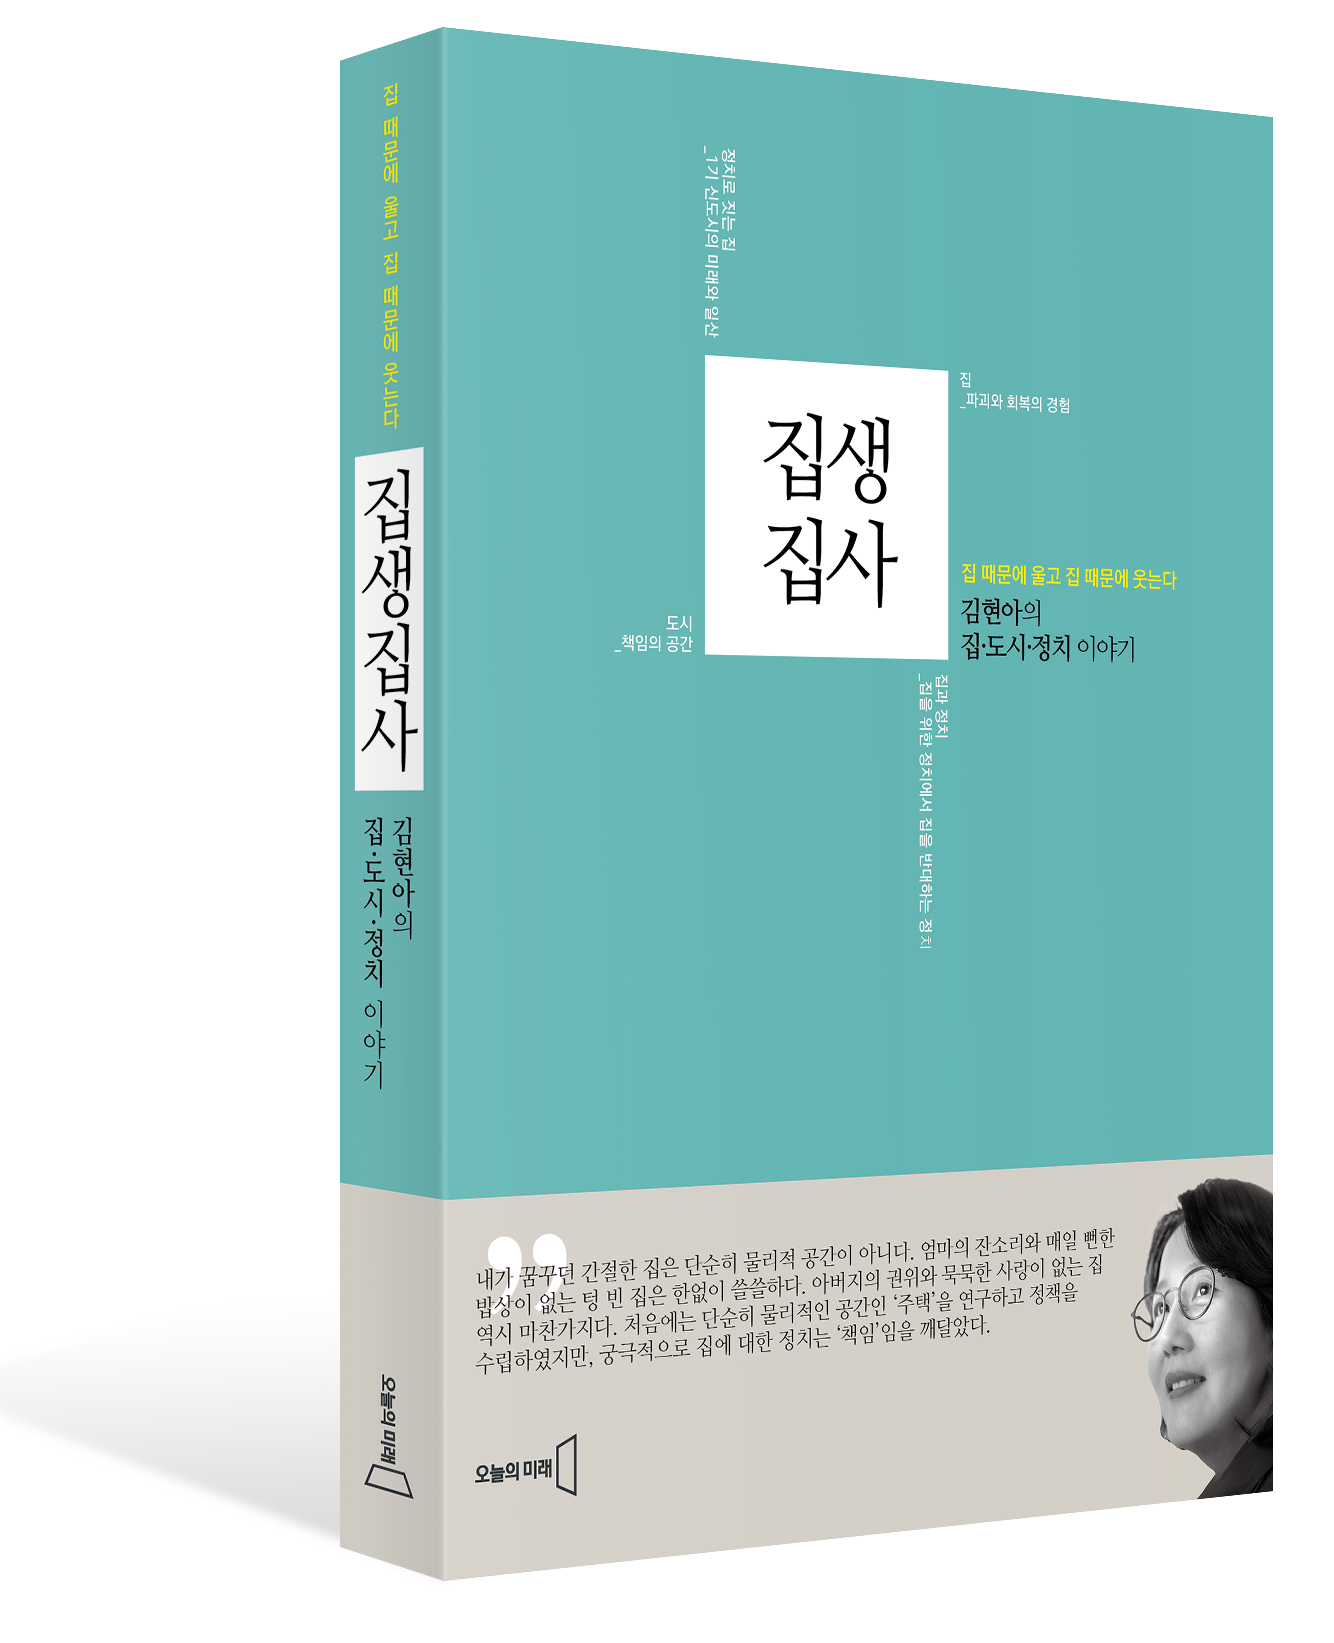 김현아 전 국회의원의 저서 ‘집생집사’ 표지